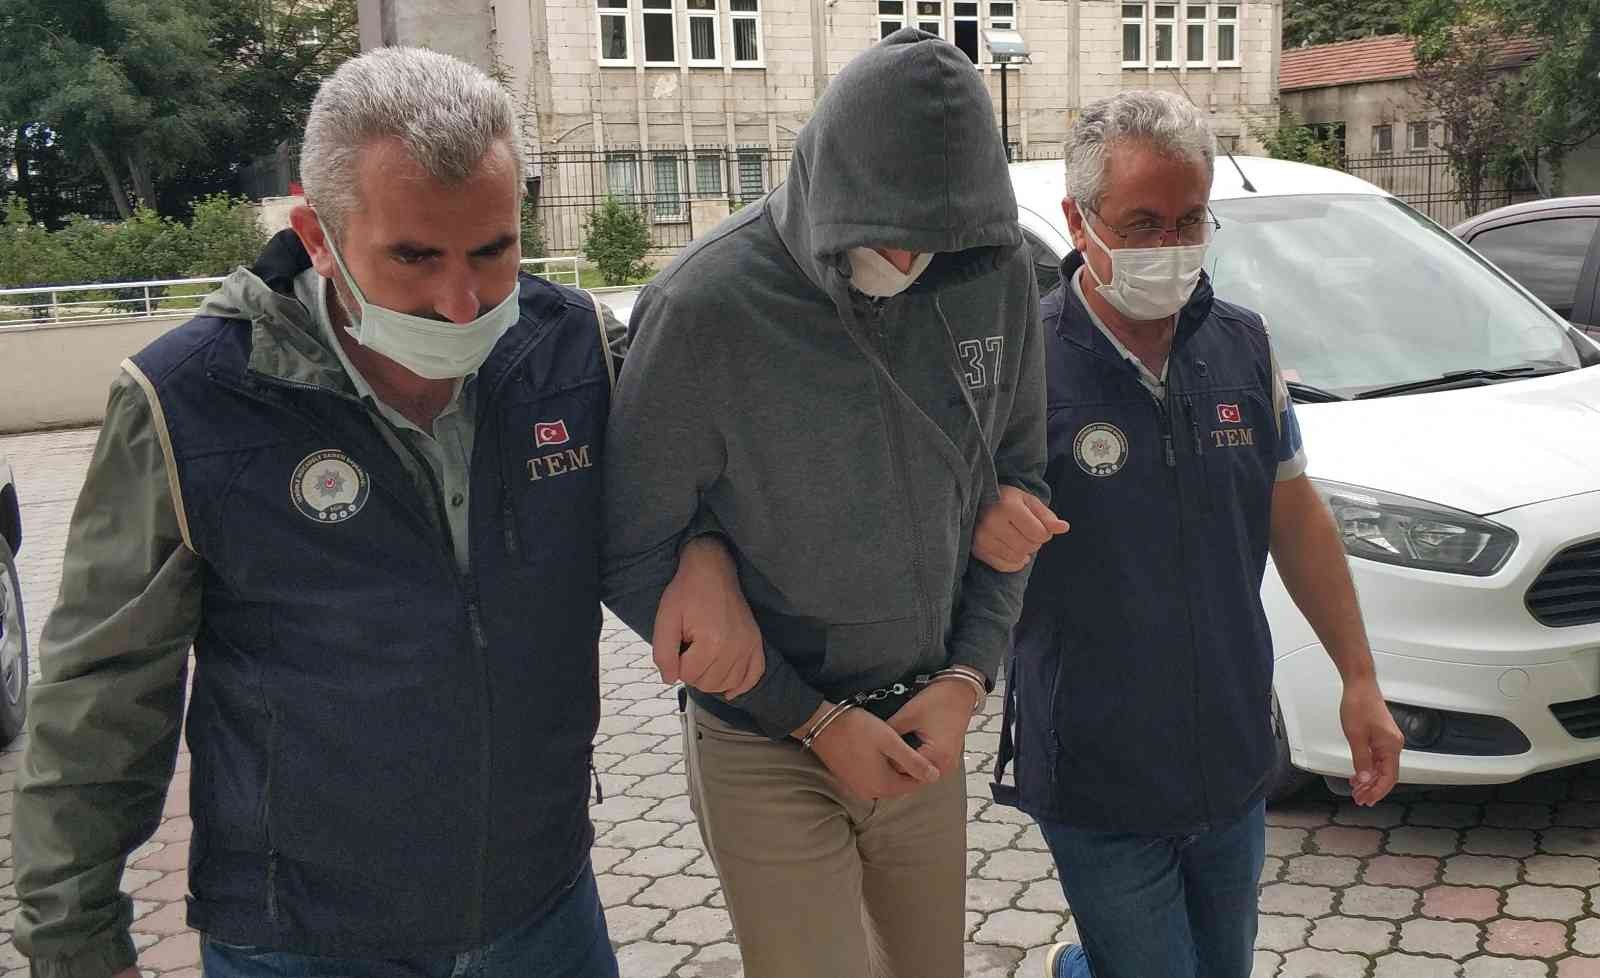 FETÖ/PDY operasyonunda 4 kişiden 1’i tutuklandı #denizli